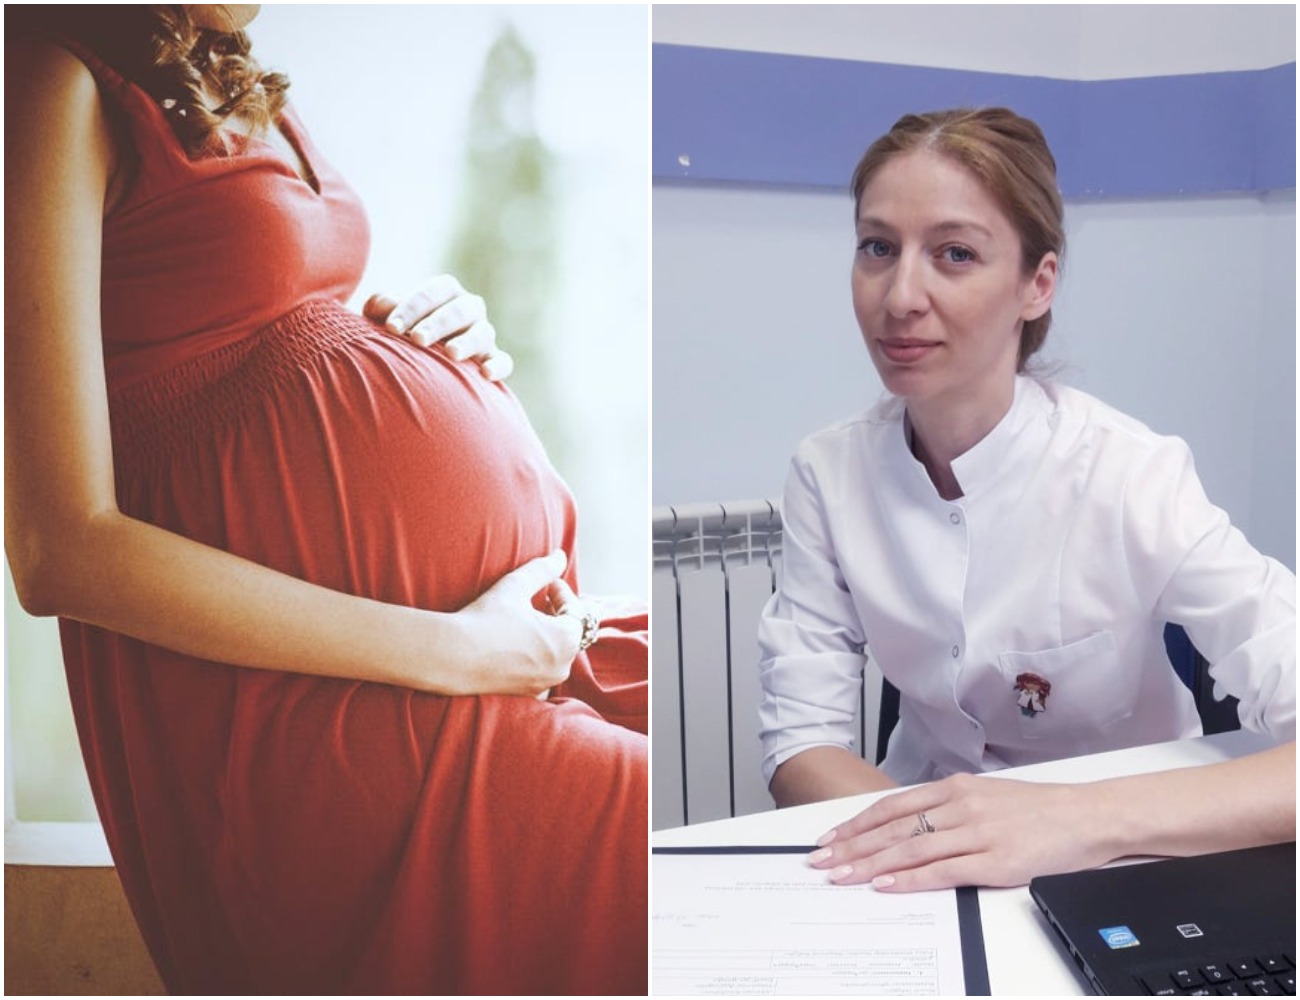 რამდენი უნდა მოვიმატოთ ორსულობის განმავლობაში? - გენეკოლოგი ორსულობისას წონის მატებისა და წონის დეფიციტის შესახებ საუბრობს